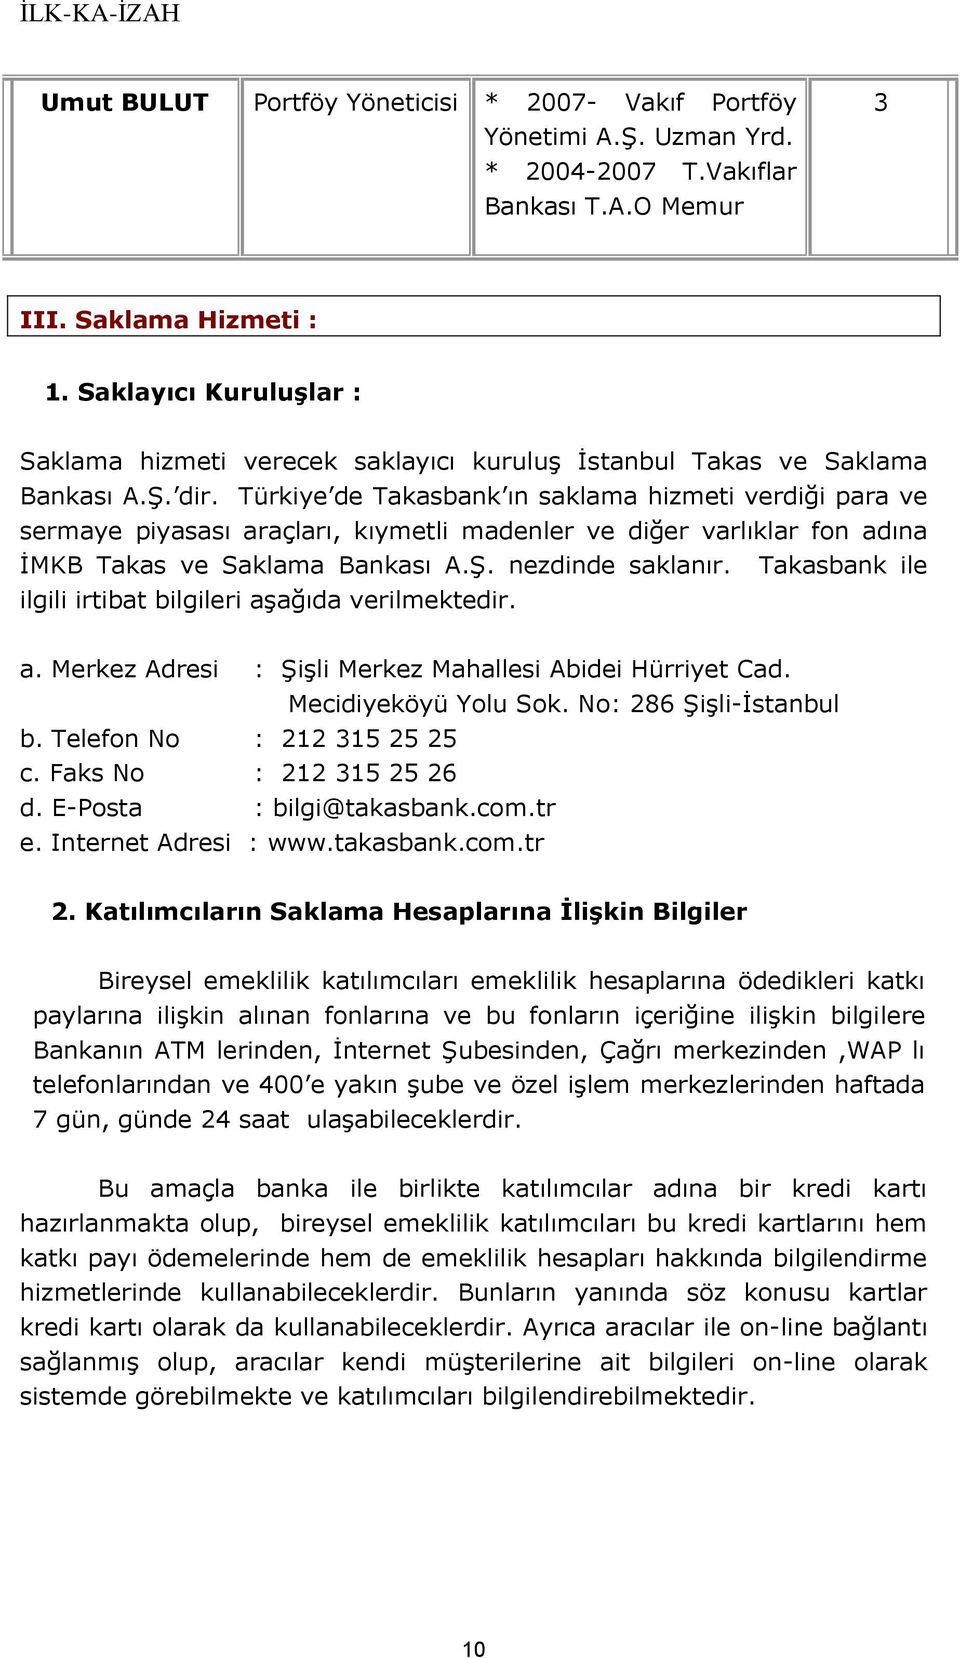 Türkiye de Takasbank ın saklama hizmeti verdiği para ve sermaye piyasası araçları, kıymetli madenler ve diğer varlıklar fon adına İMKB Takas ve Saklama Bankası A.Ş. nezdinde saklanır.